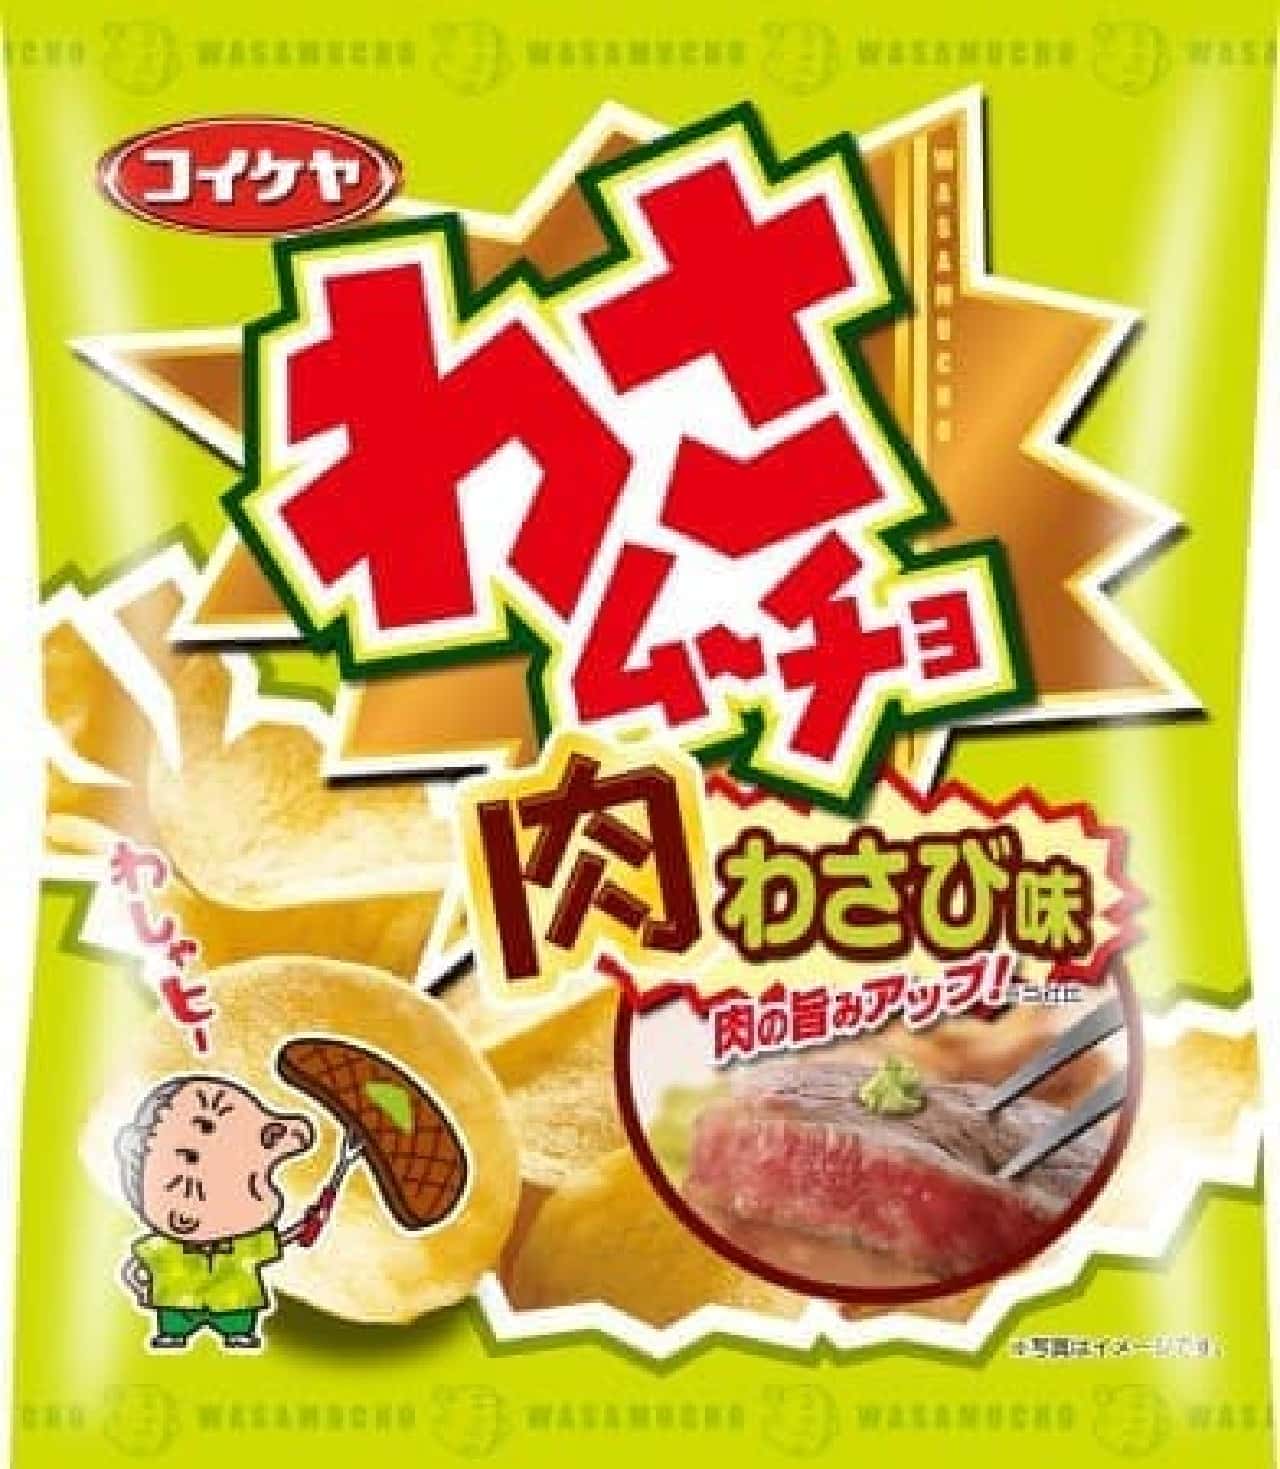 "Wasabi Chips Meat Wasabi Flavor" Koike-ya